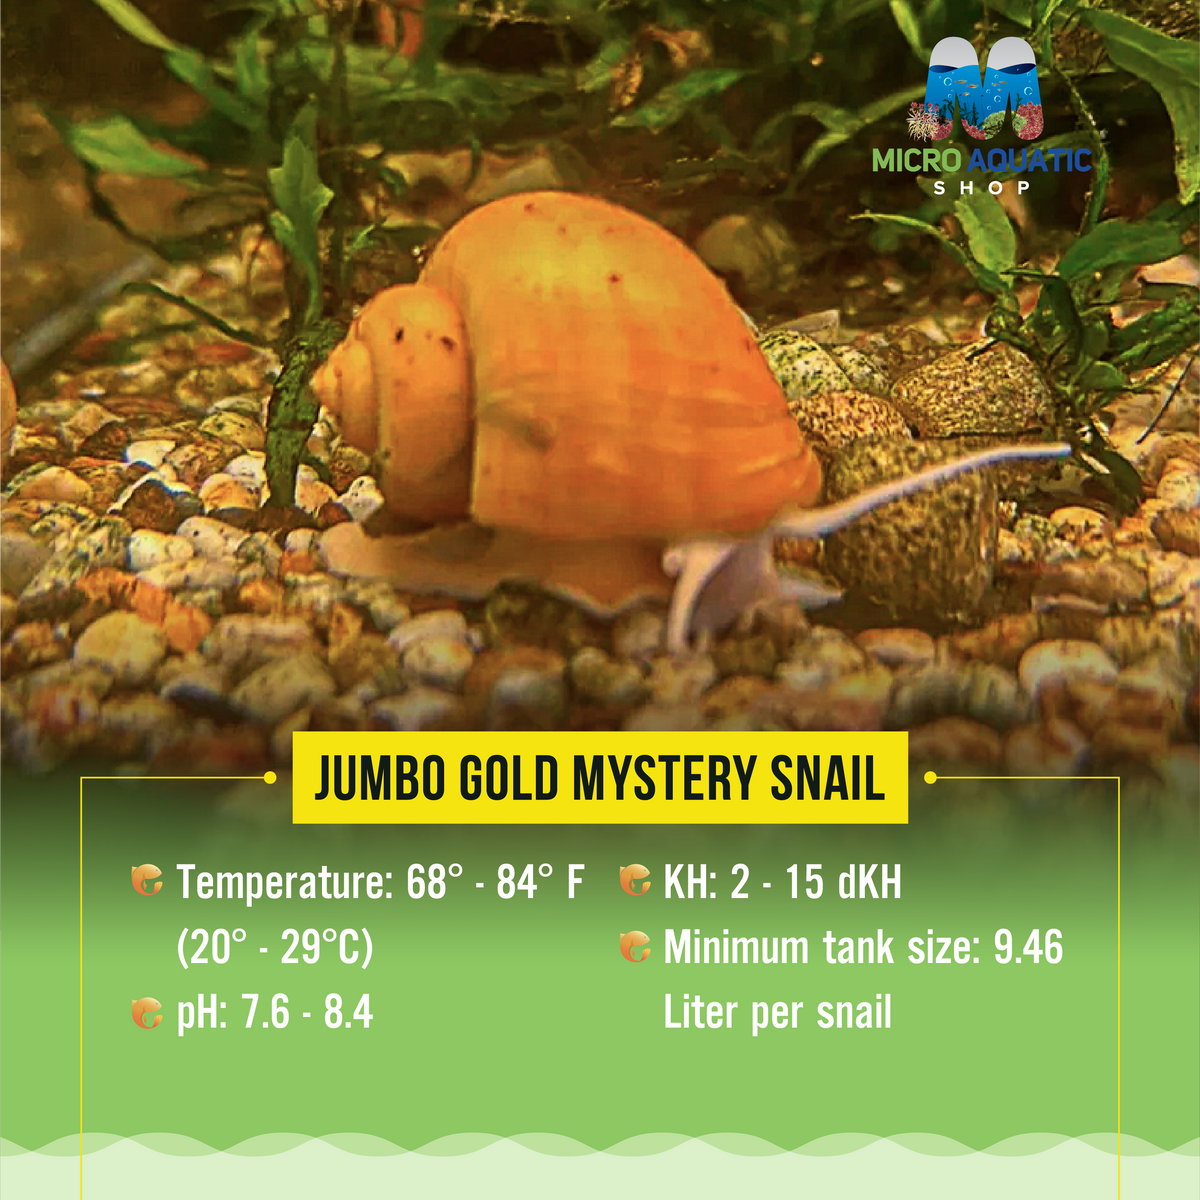 Jumbo Gold Mystery Snail